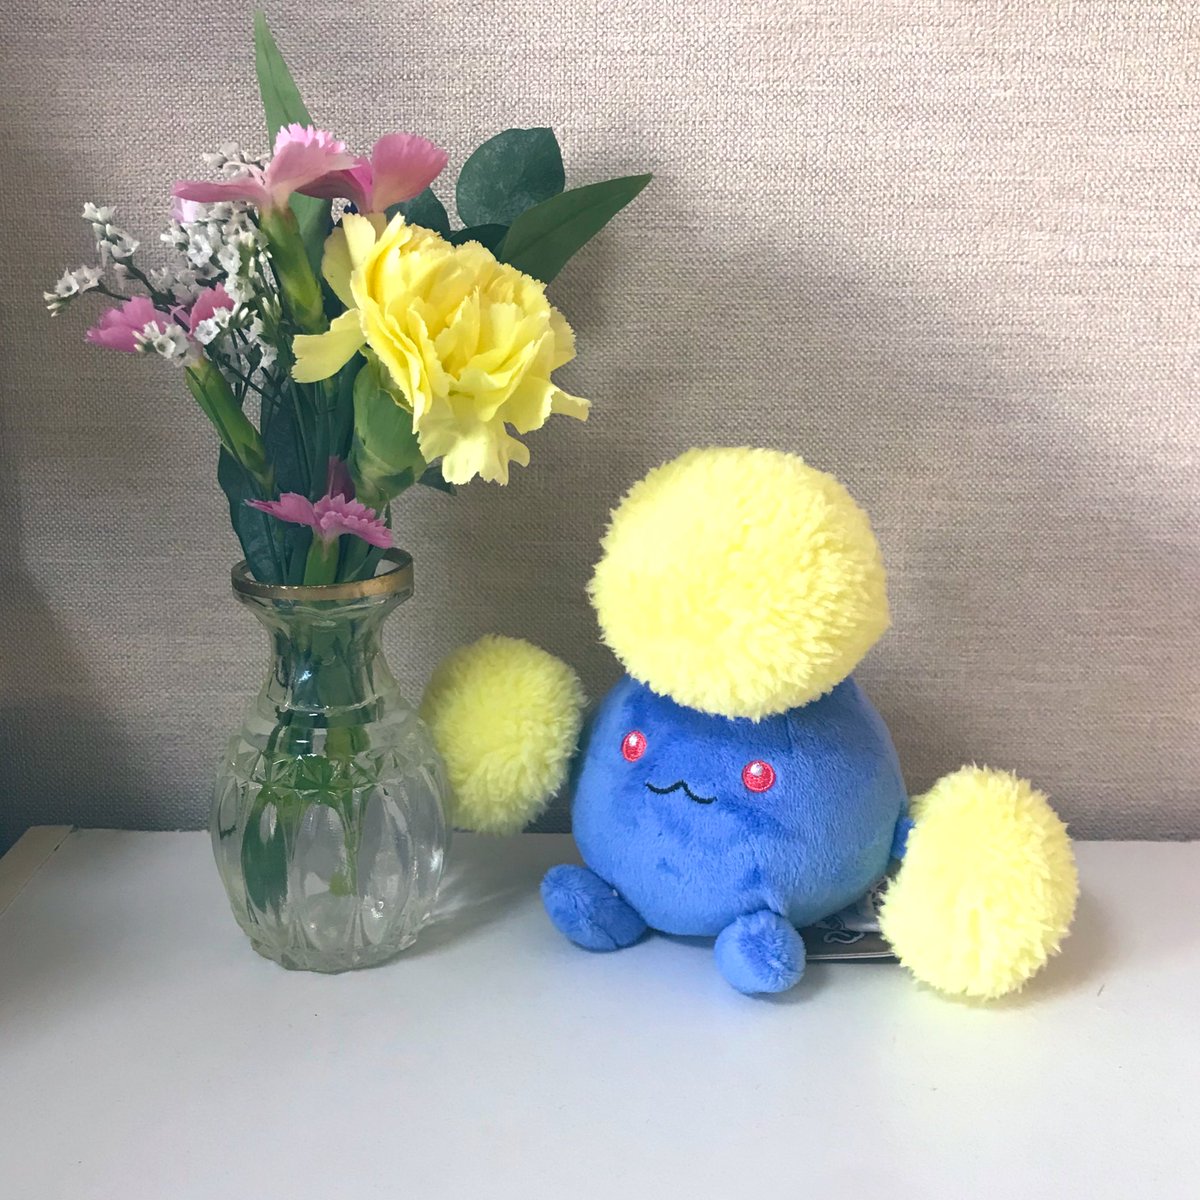 #花の定期便 #bloomee 【@bloomee_jp 】さんからの今週のブーケ

最近お迎えした可愛いこと一緒に💙💛

 #ブルーミー
#花のサブスク
 #PR

https://t.co/OJwIV4fYWu… 